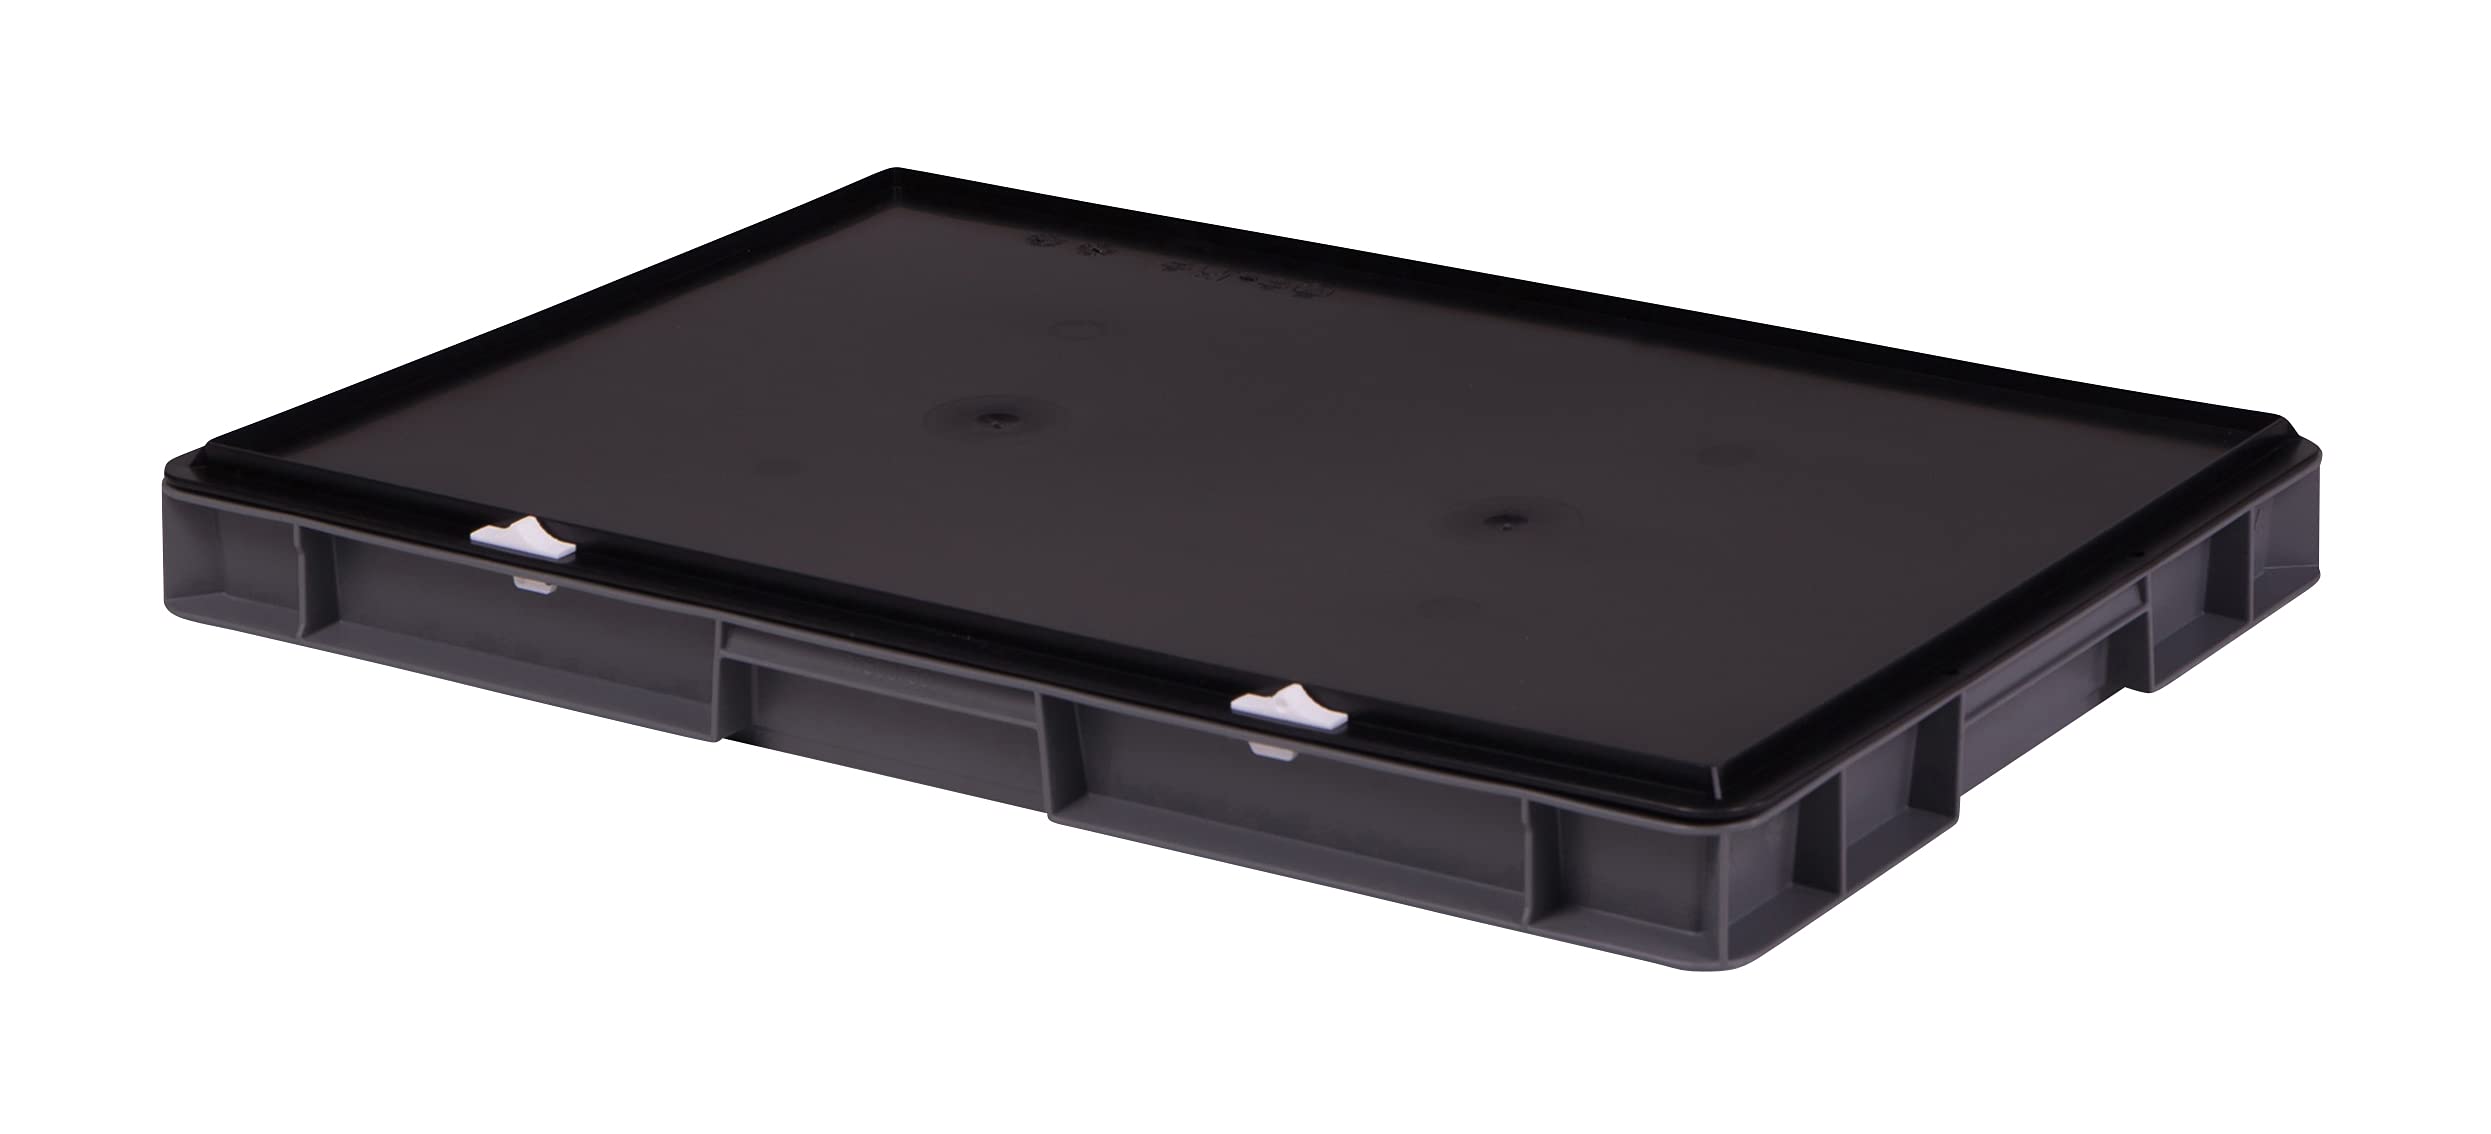 1a-TopStore Stabile Profi Aufbewahrungsbox Stapelbox Eurobox Stapelkiste mit Deckel, Kunststoffkiste lieferbar in 5 Farben und 21 Größen für Industrie, Gewerbe, Haushalt (grau, 60x40x6 cm)